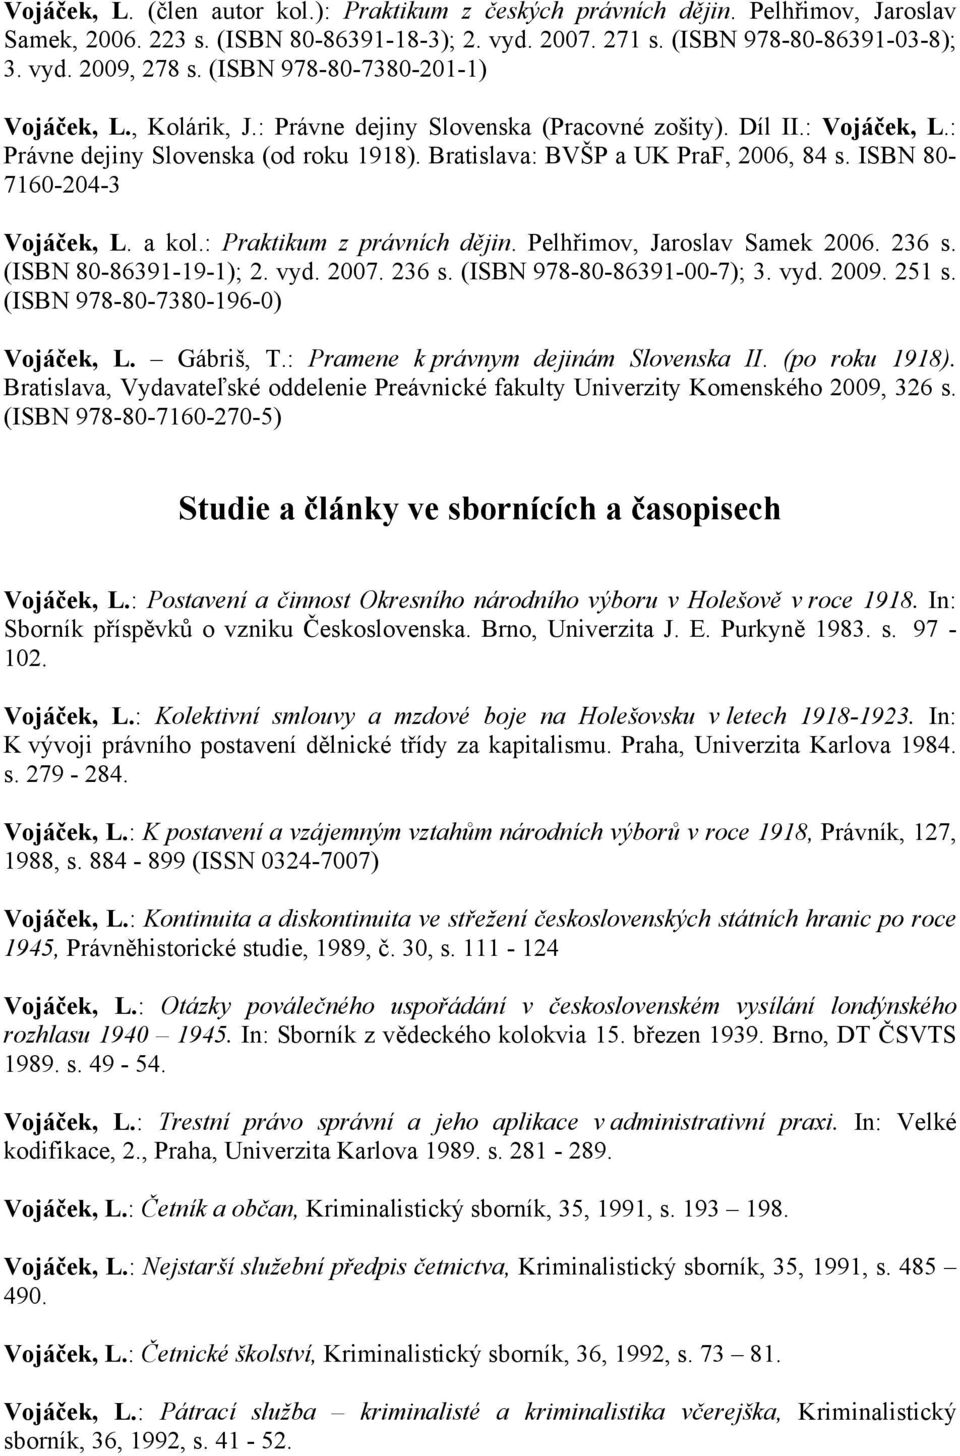 ISBN 80-7160-204-3 Vojáček, L. a kol.: Praktikum z právních dějin. Pelhřimov, Jaroslav Samek 2006. 236 s. (ISBN 80-86391-19-1); 2. vyd. 2007. 236 s. (ISBN 978-80-86391-00-7); 3. vyd. 2009. 251 s.